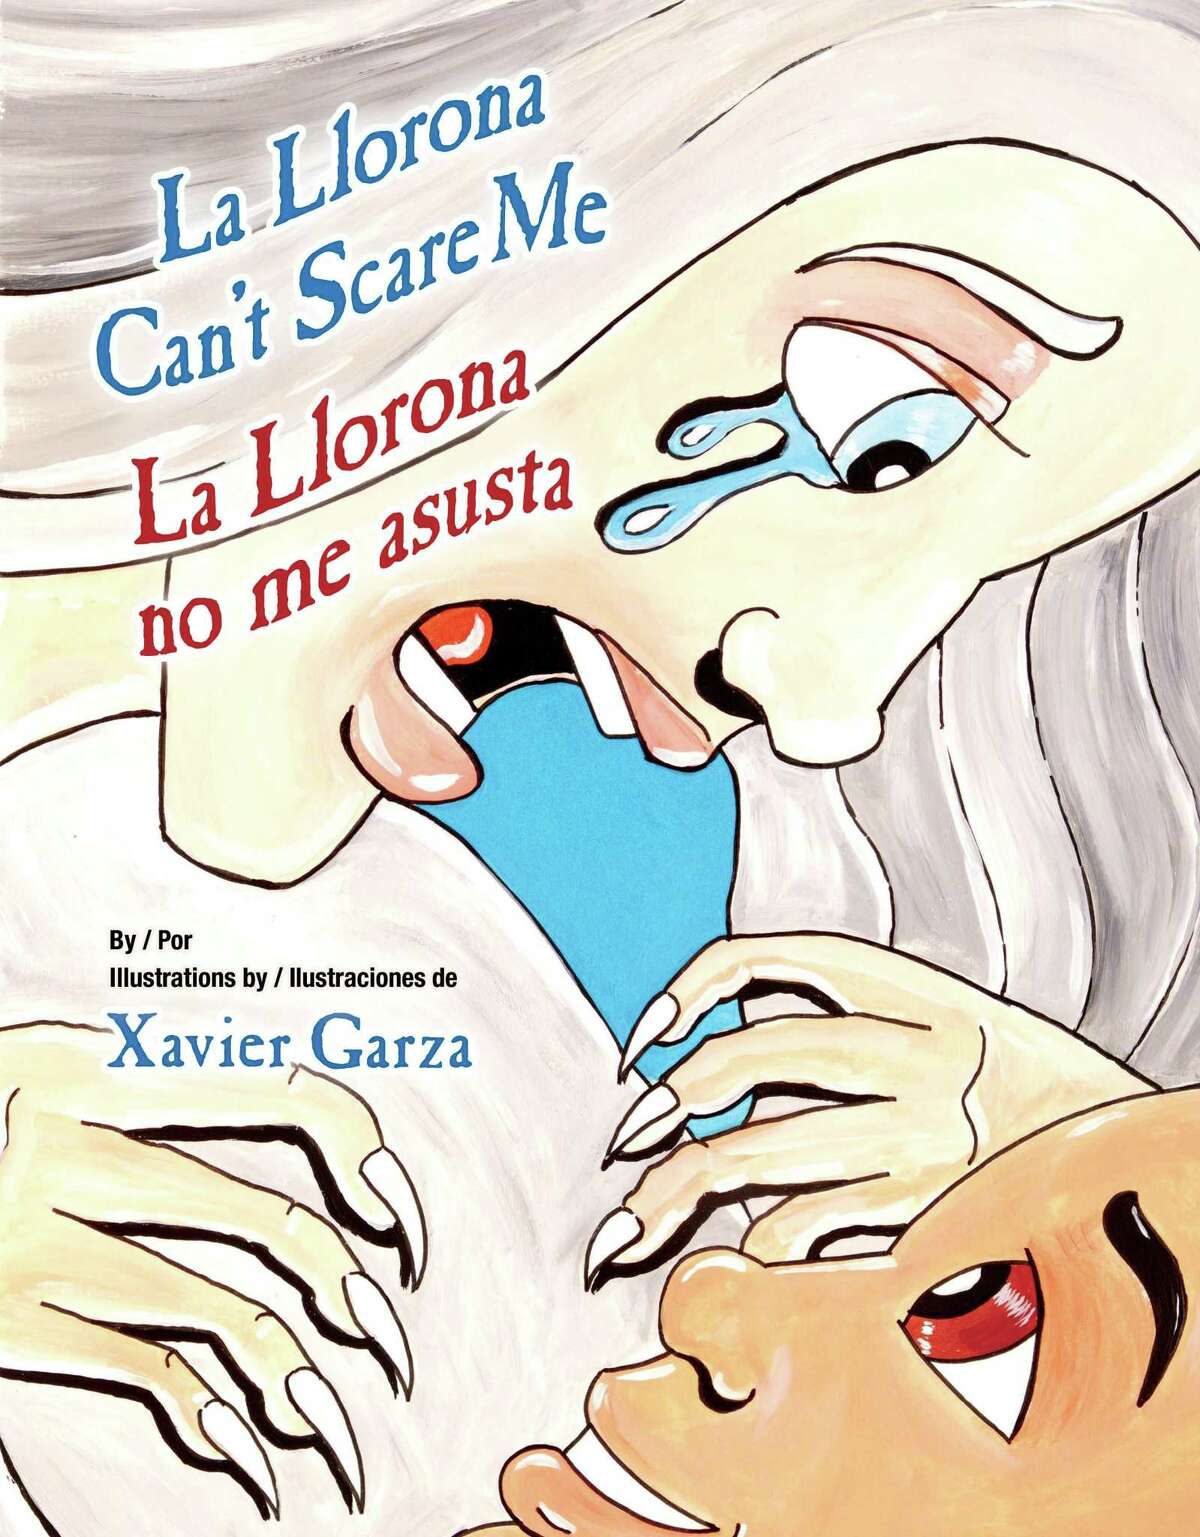 San Antonio artist and writer Xavier Garza's latest children's book is 